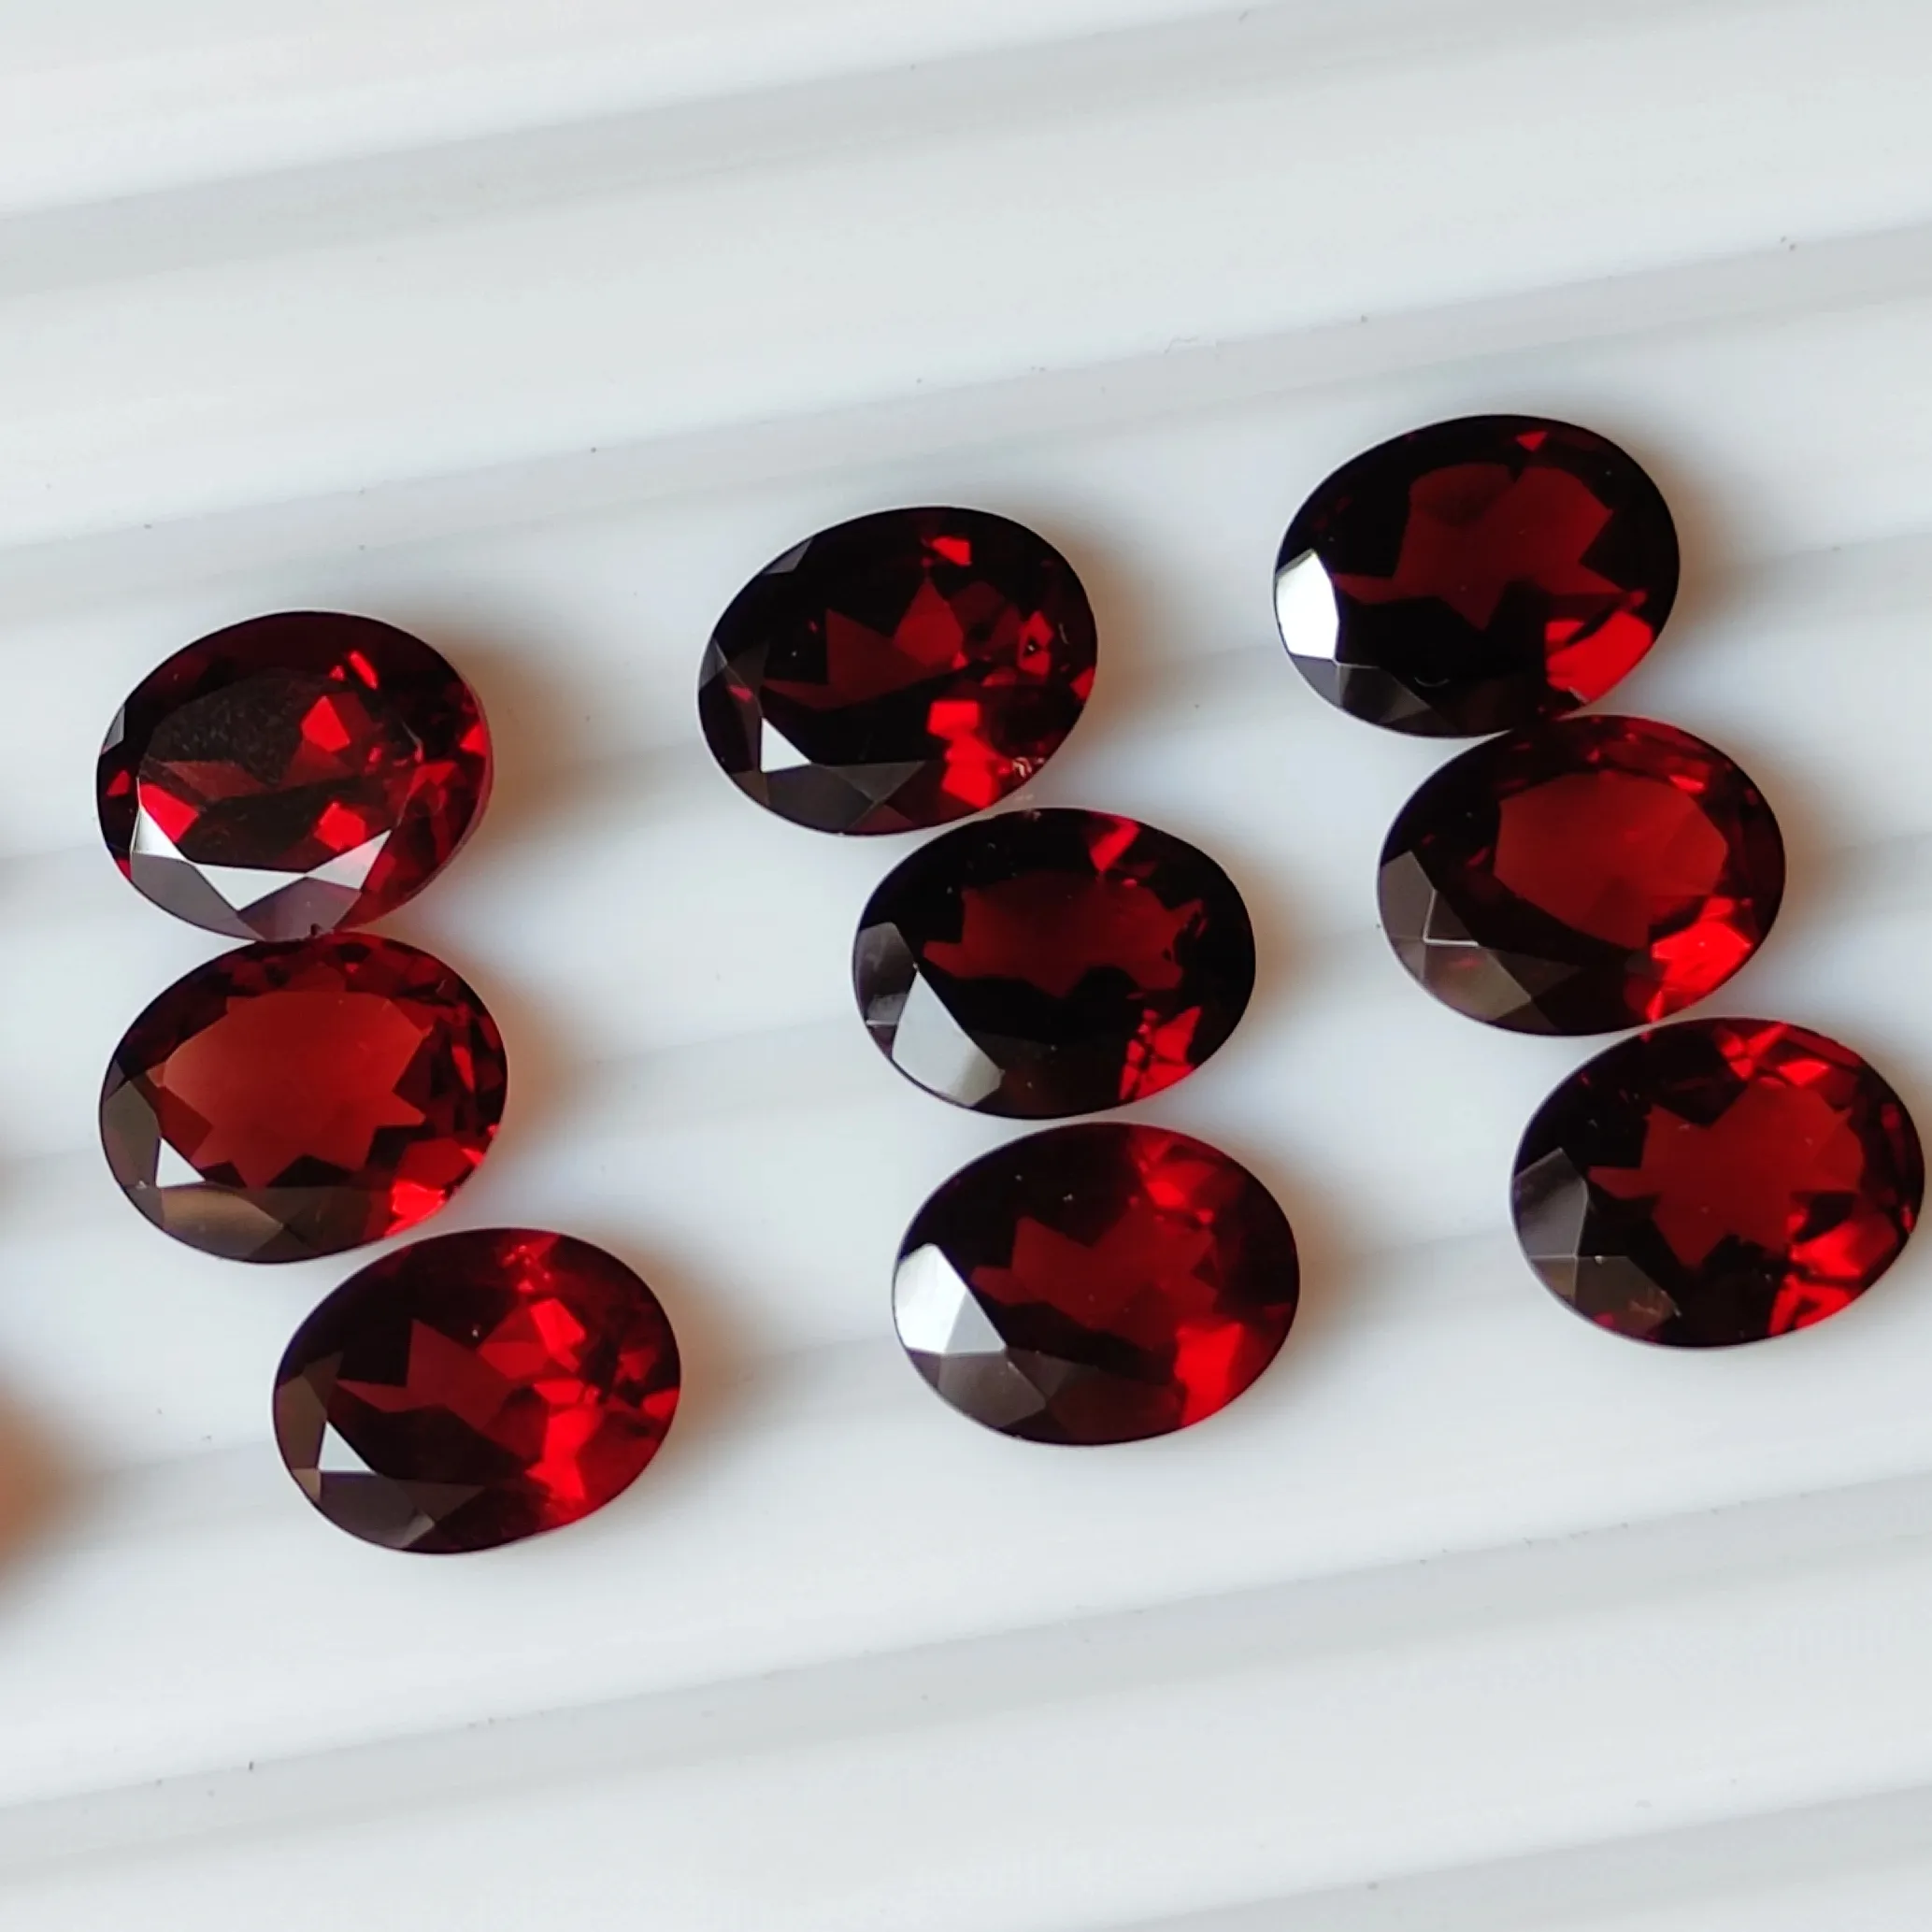 Piedras de corte Garrnet de Mozambique rojas de alta calidad de 2mm a 12mm en cada forma y tamaño Gemas de granate facetadas de pera redonda ovalada